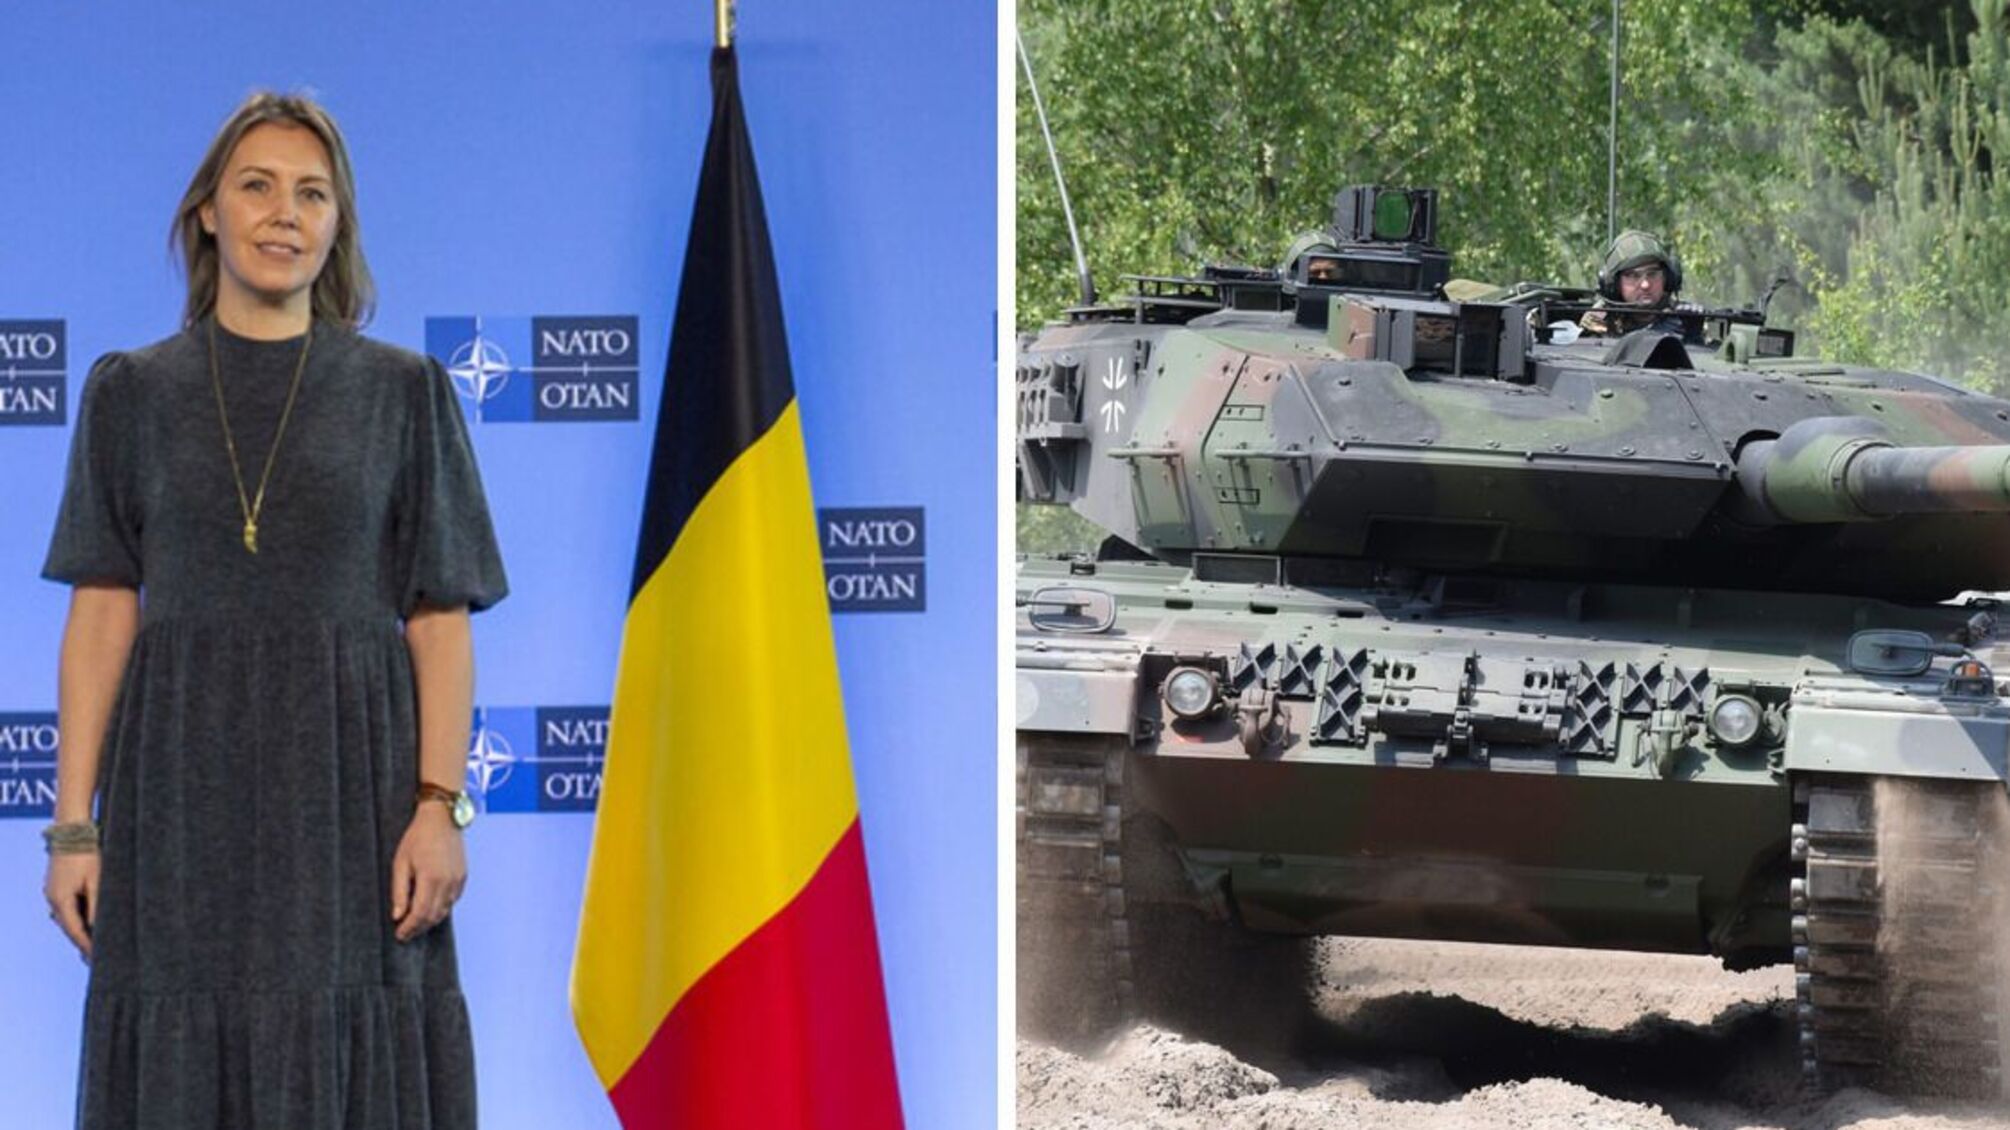 Бельгия предоставит Украине пакет оружия: будут ли в нем танки Leopard - что известно